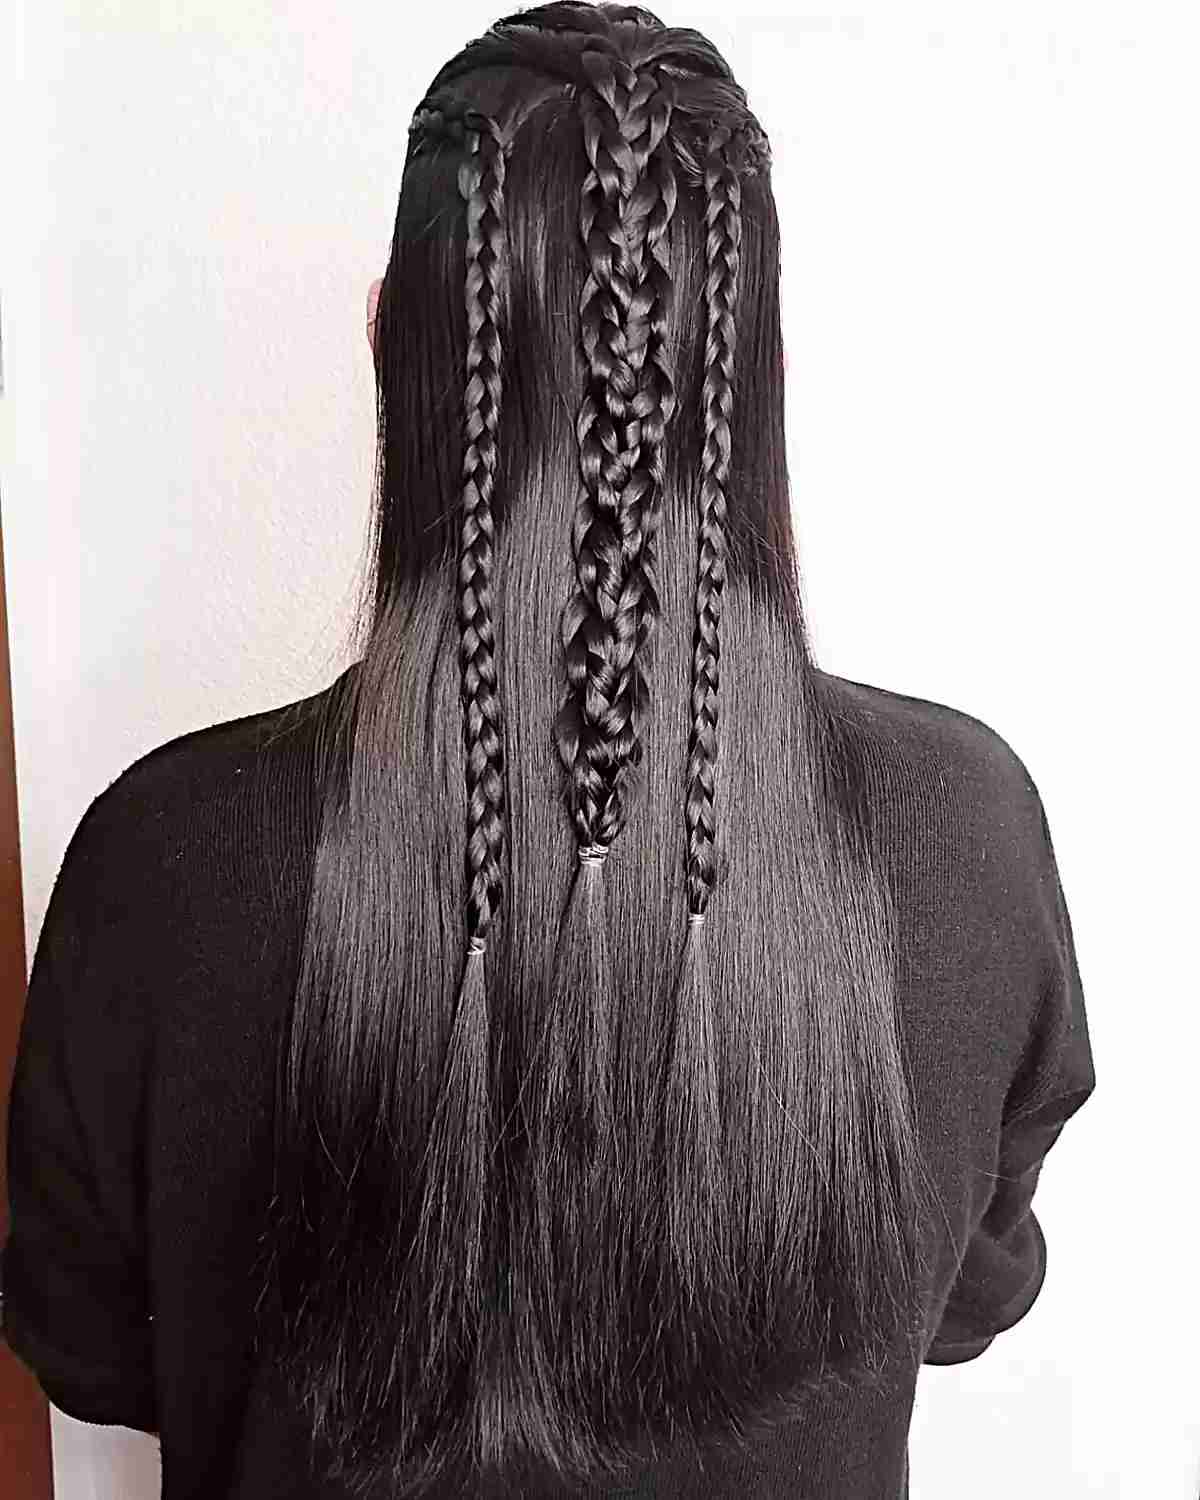 Viking-Inspired Long Sleek Woven Braids for Women